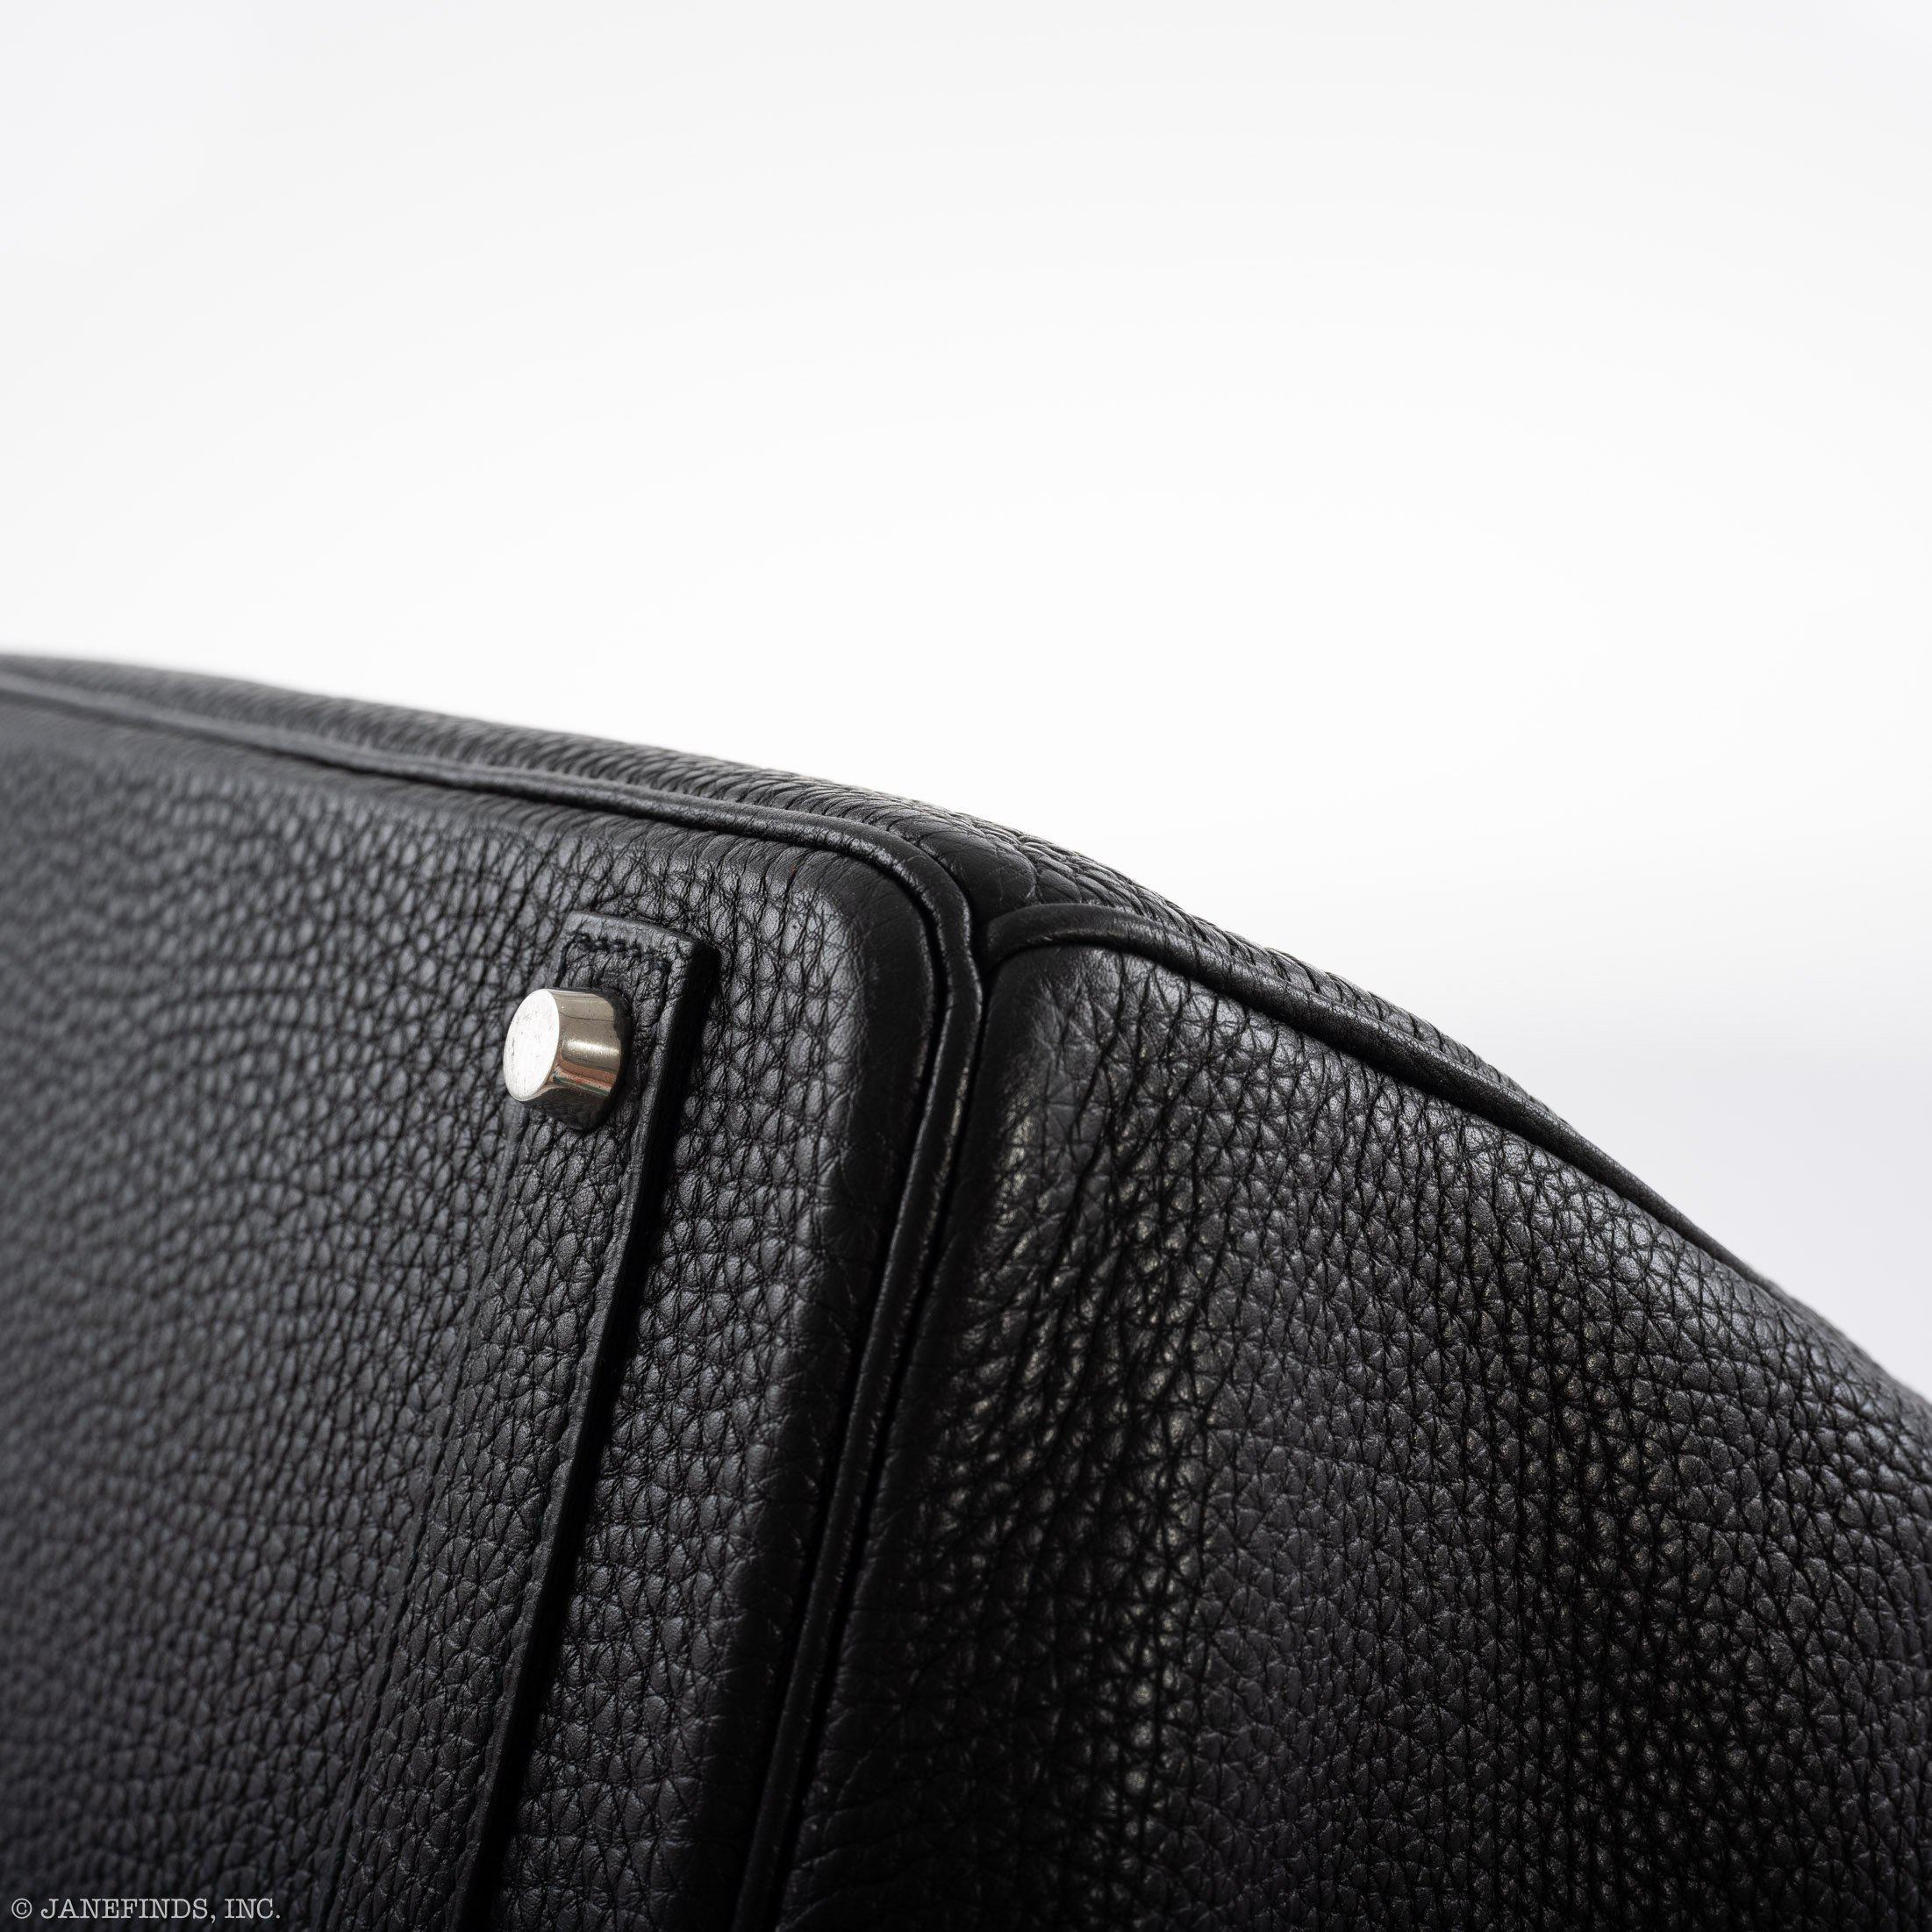 Hermès Birkin 40 Black Togo leather Palladium Hardware